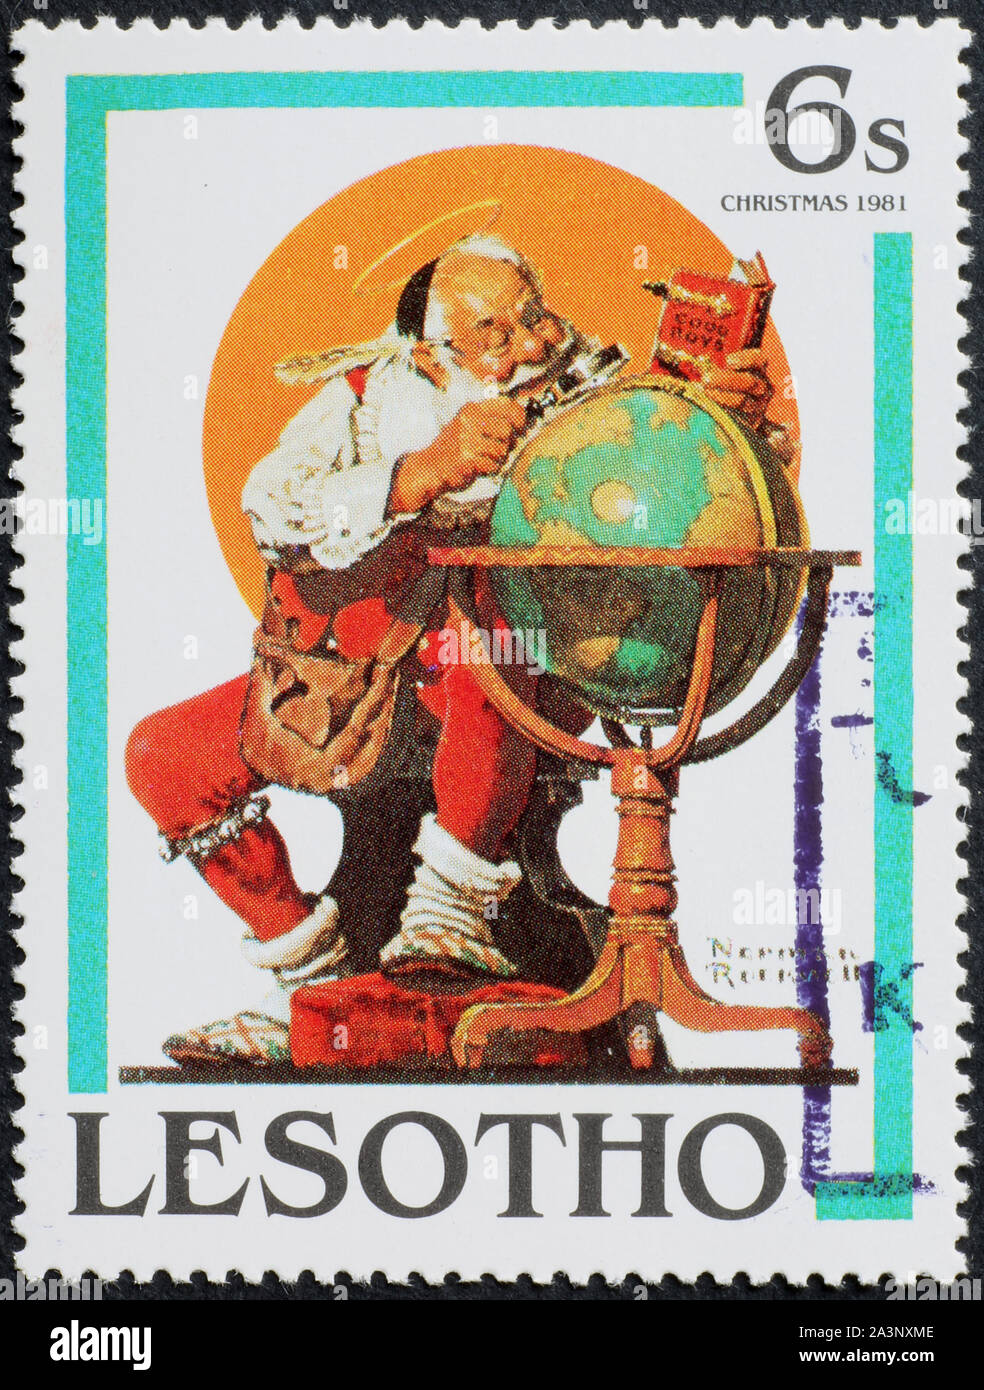 Père Noël l'étude globe par Norman Rockwell sur stamp Banque D'Images